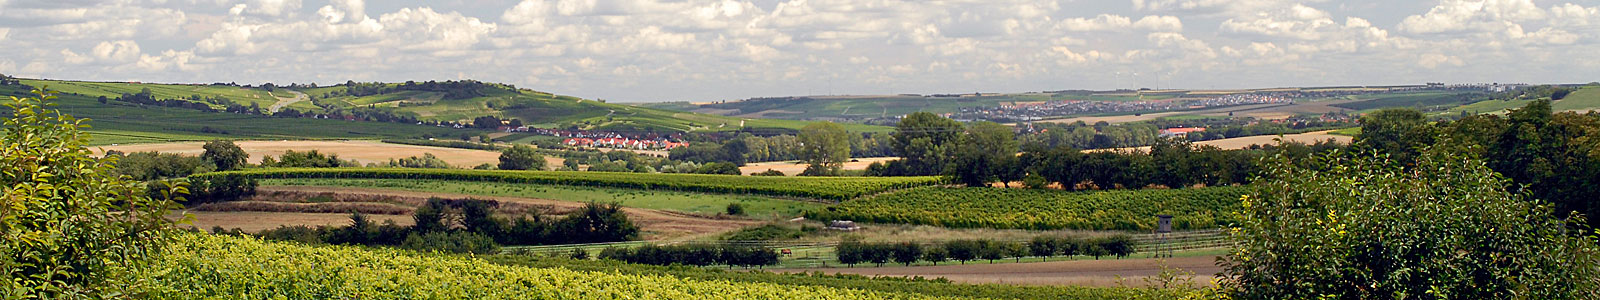 Rheinhessische Hügellandschaft mit Dörfern im Hintergrund ©DLR